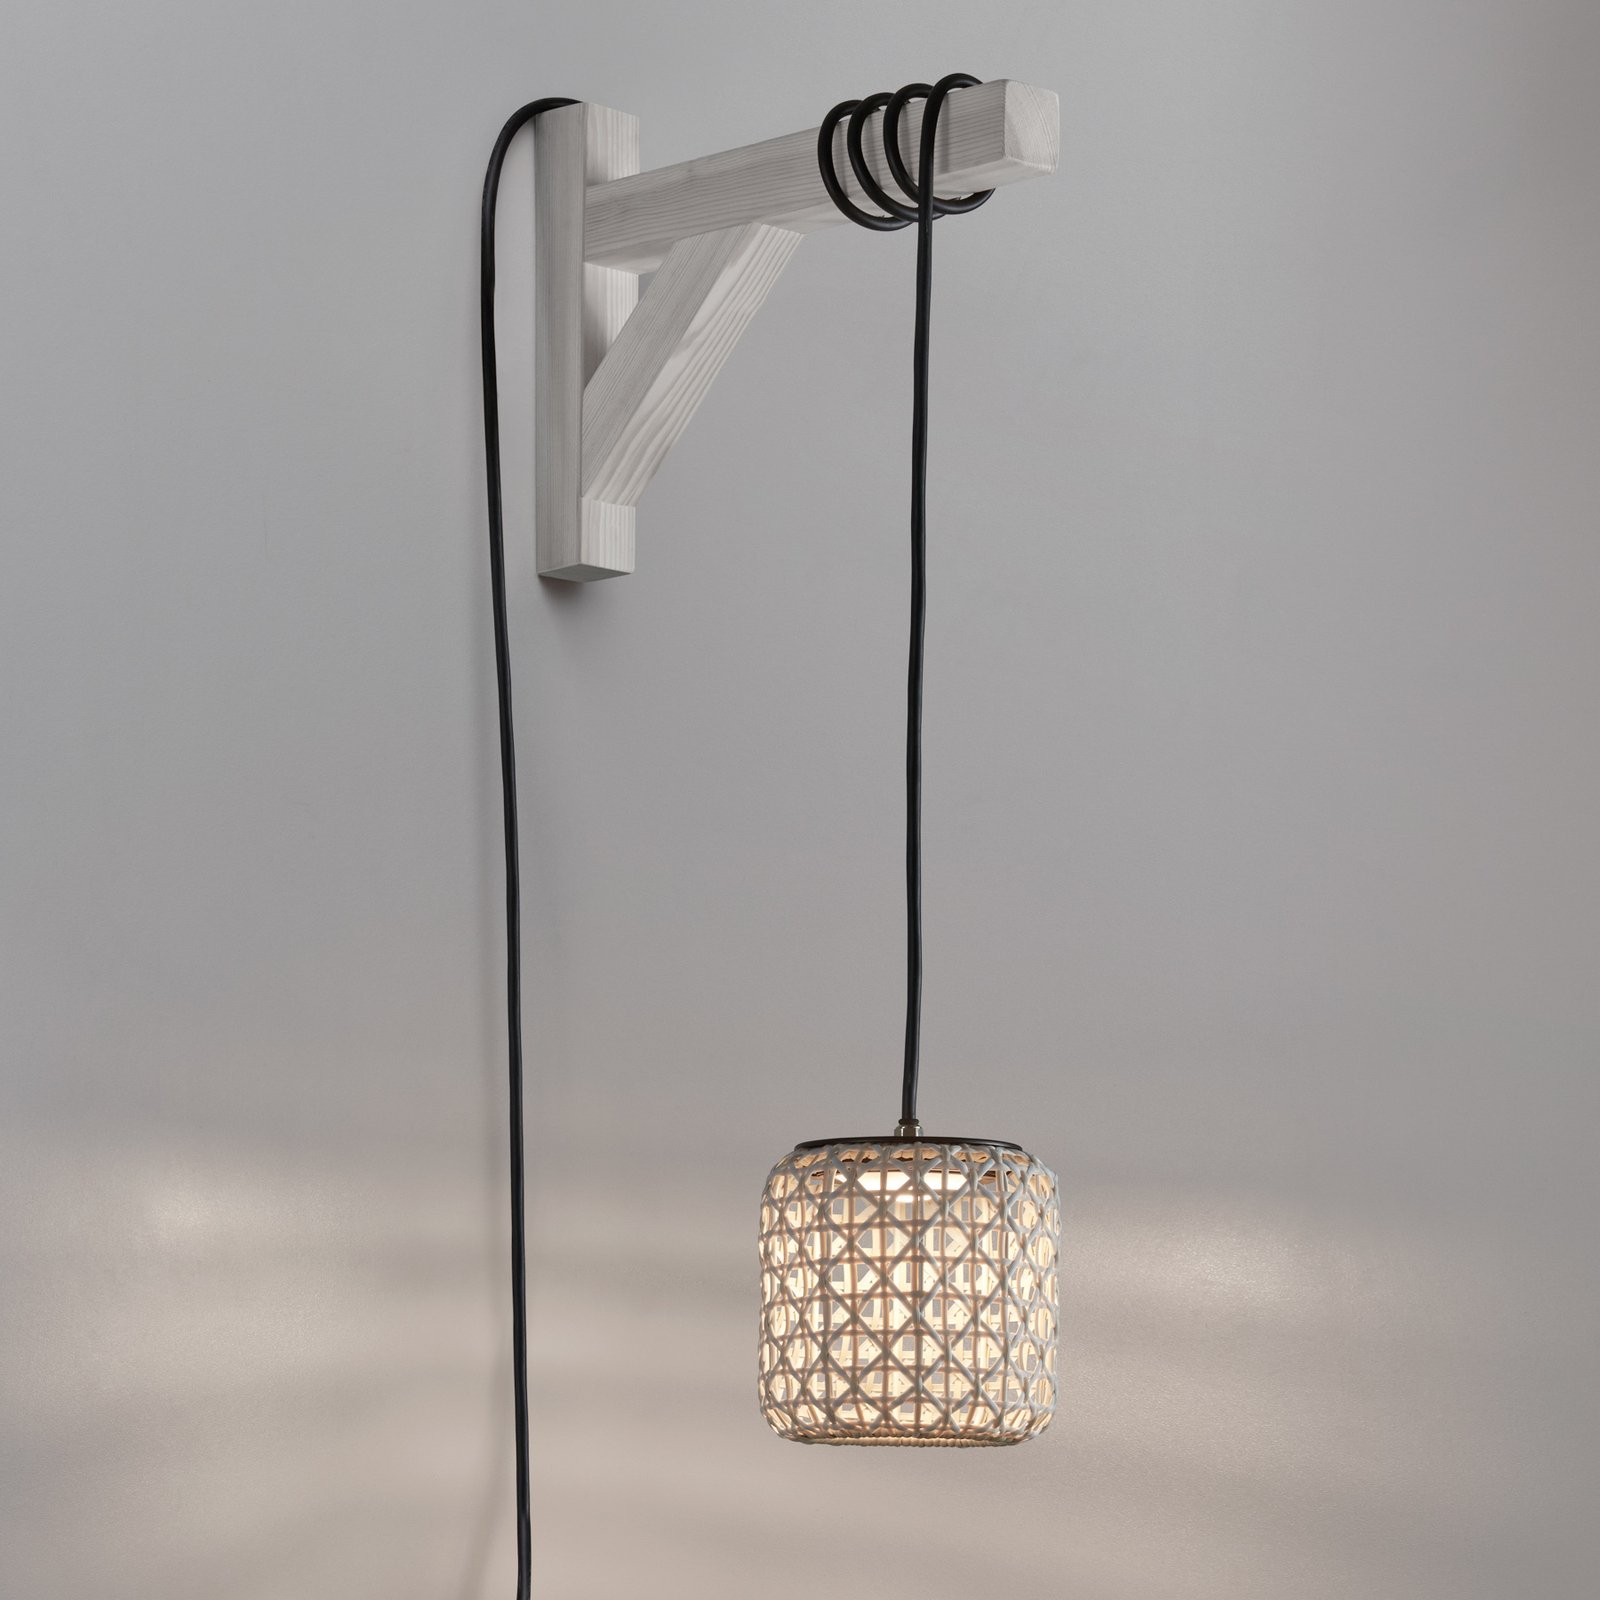 Bover Nans S/16/H LED hanglamp, stekker, beige